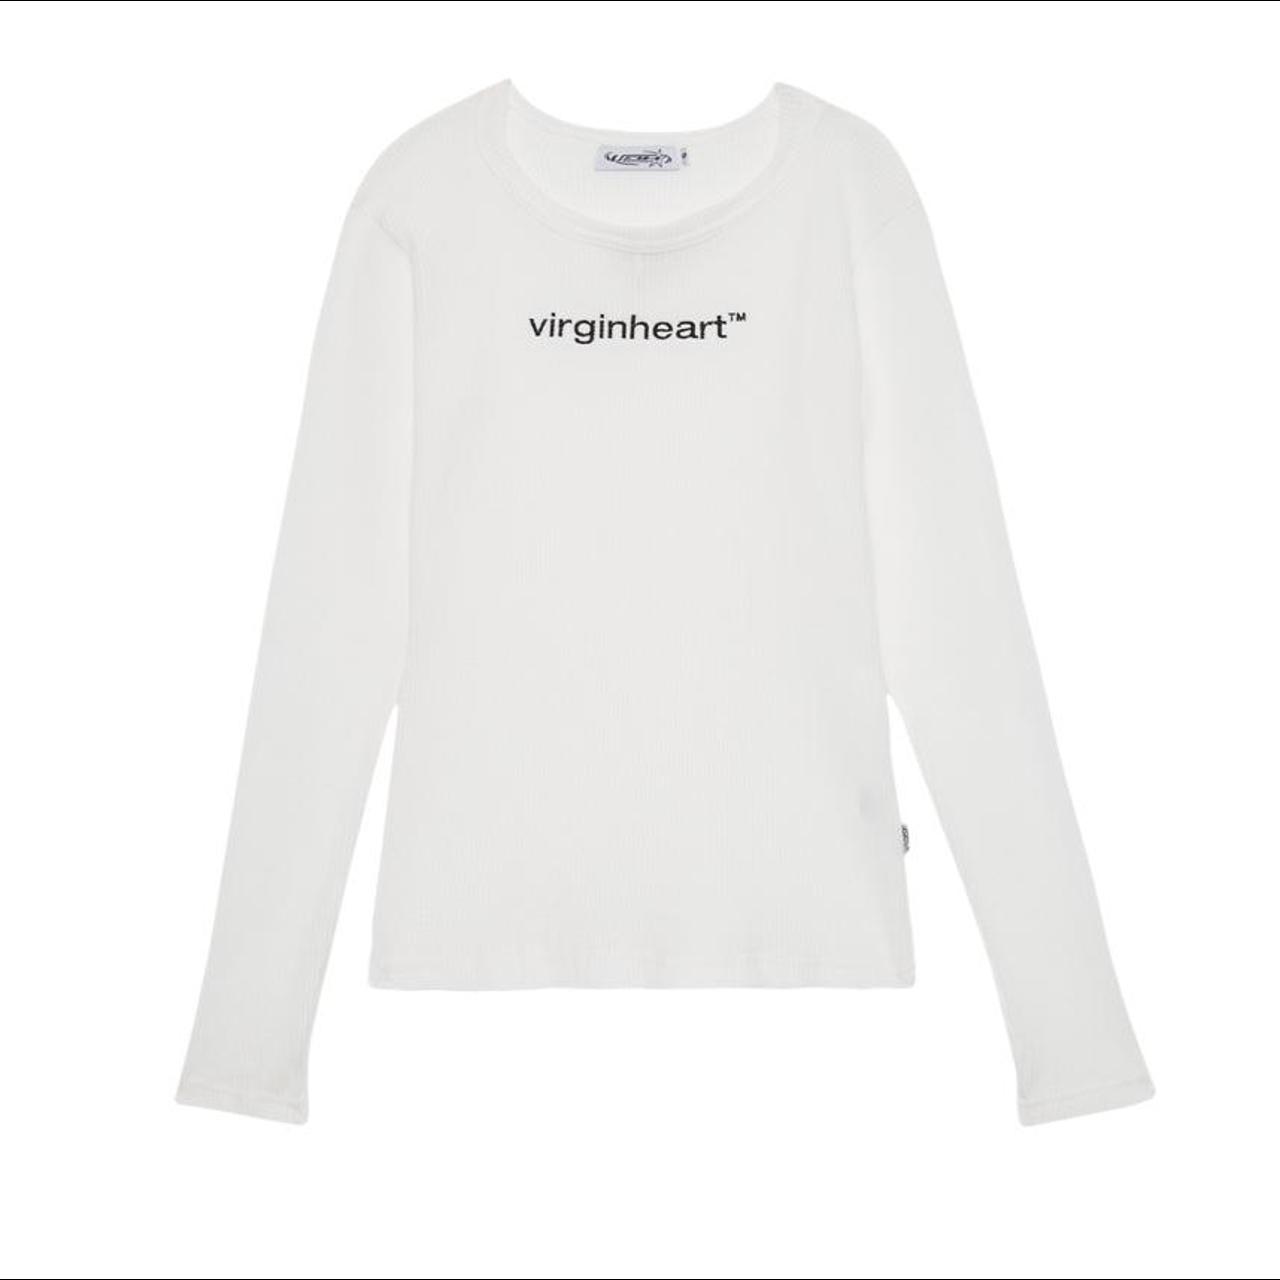 Virginheart trademark long sleeve Not too thin, not... - Depop